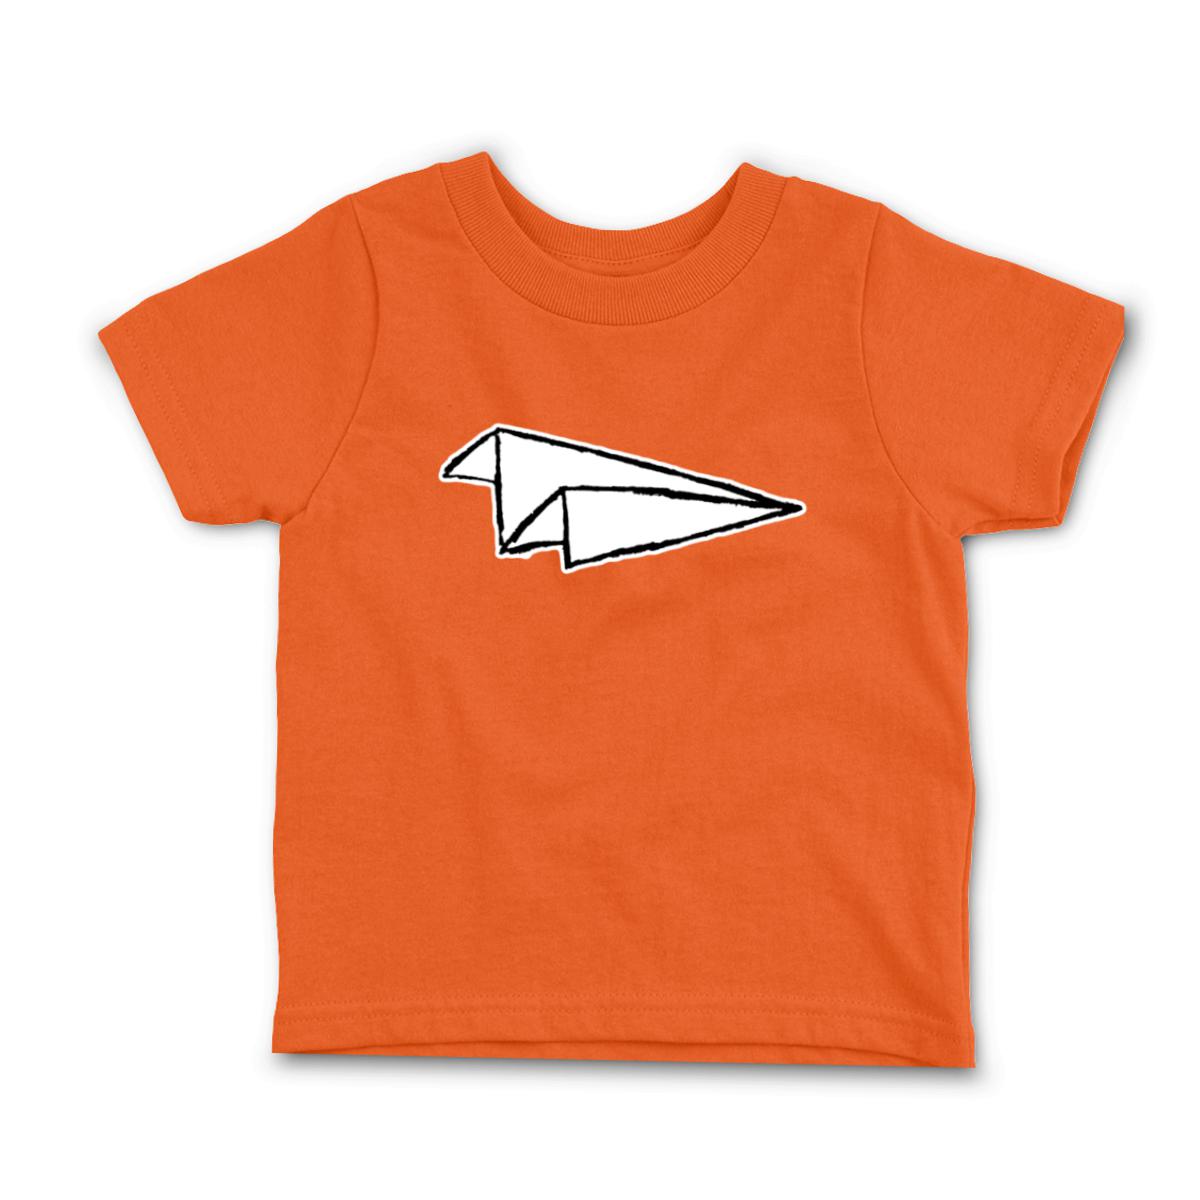 Airplane Sketch Toddler Tee 2T orange